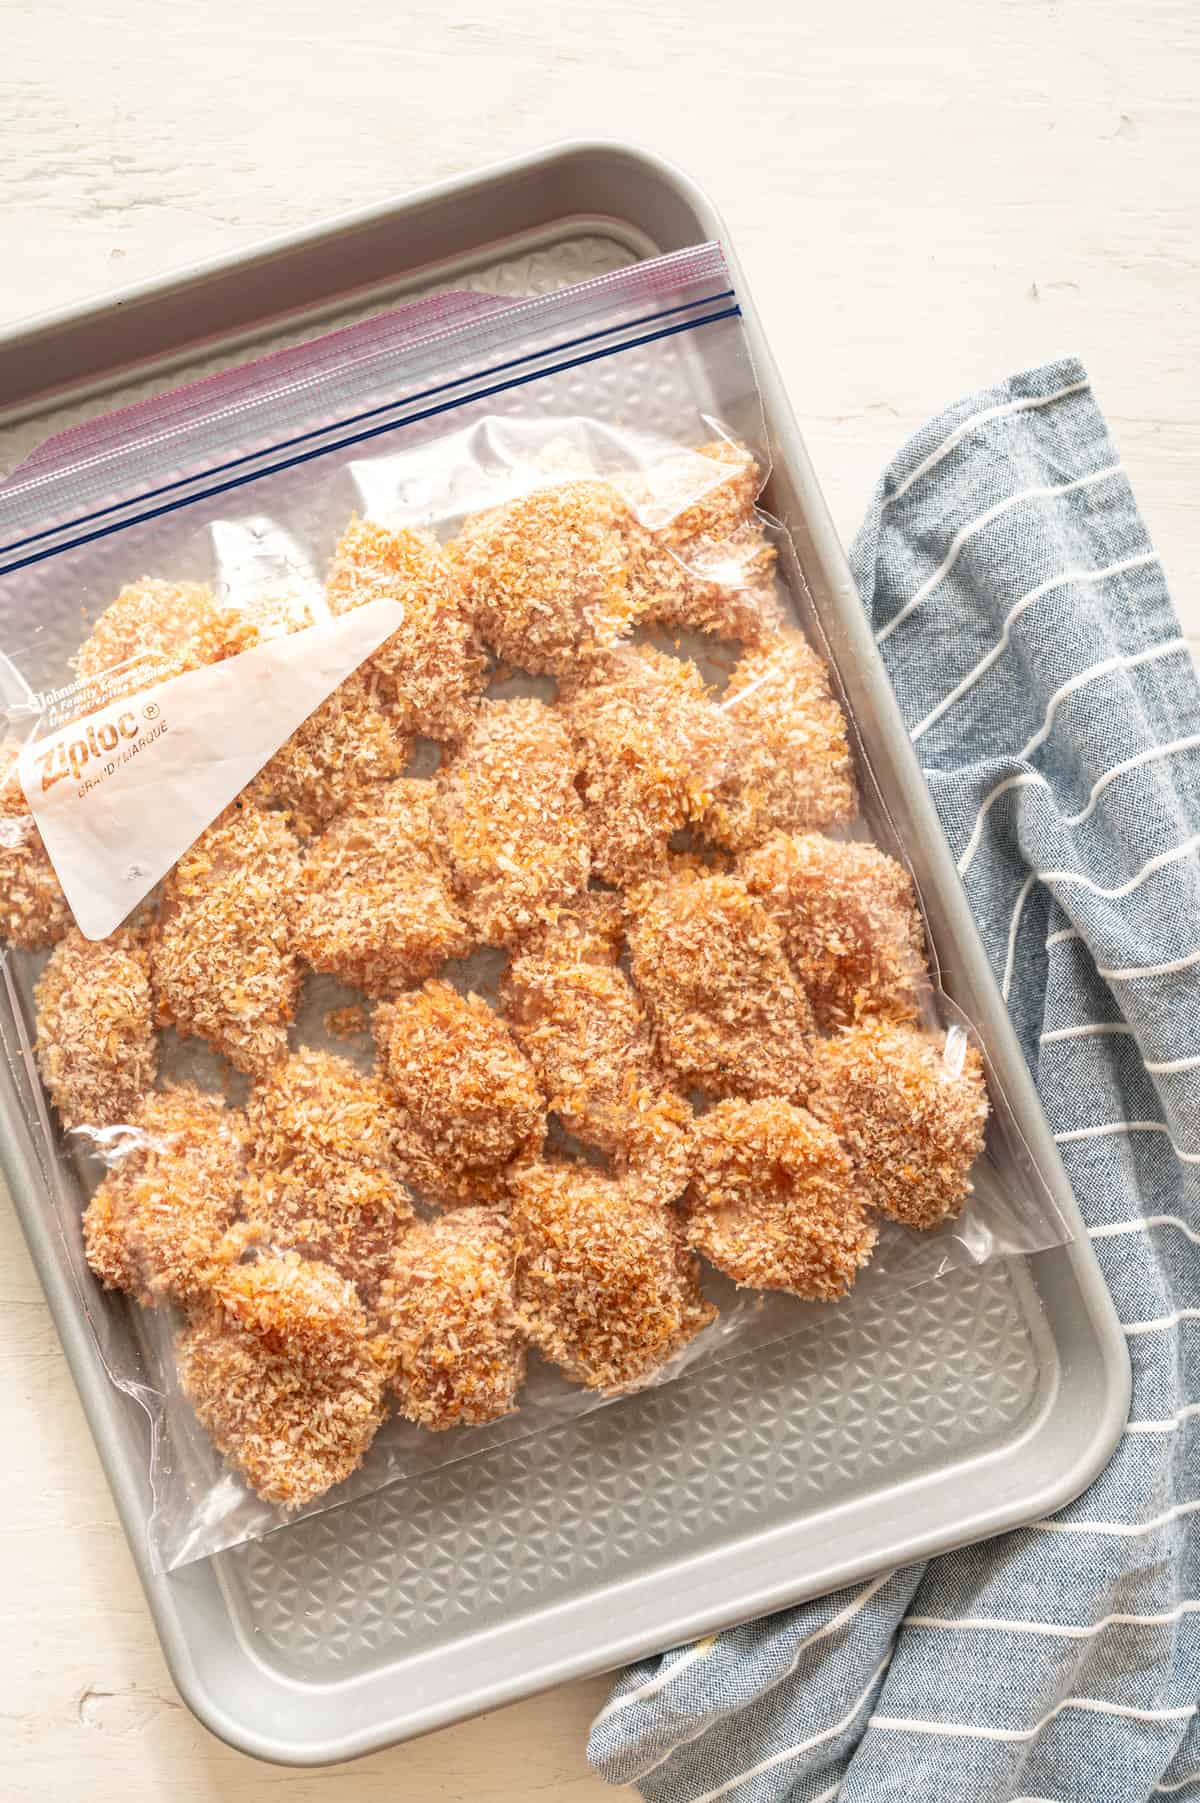 Frozen chicken nuggets in a freezer bag.